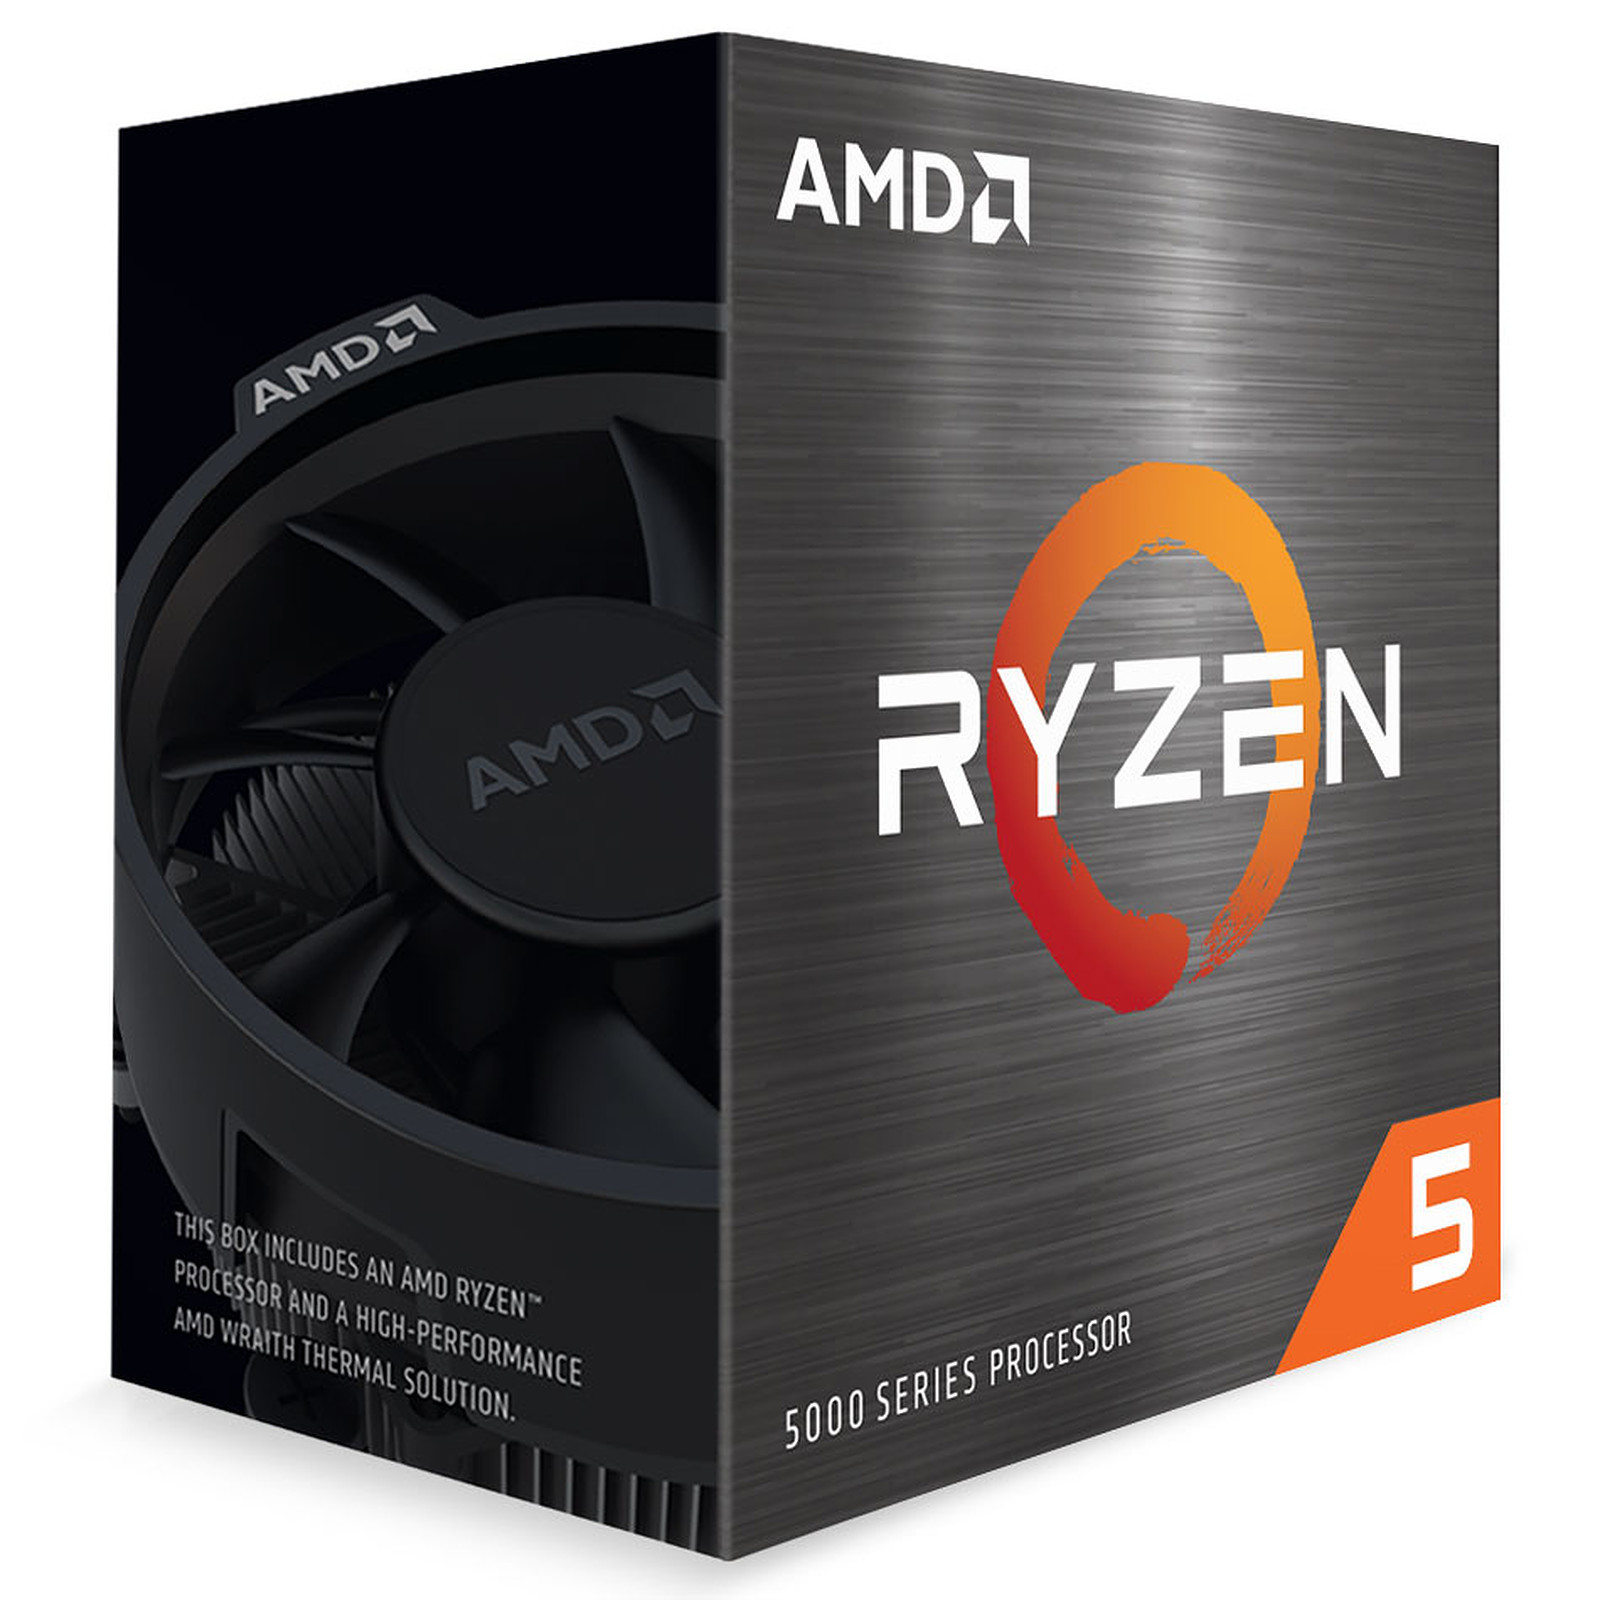 AMD processzor Ryzen 5 5600 AM4 Box (6 mag, 12 szál, 3,5 GHz / 4,4 GHz, 32 MB gyorsítótár, 65 W) Wraith Stealth hűtővel